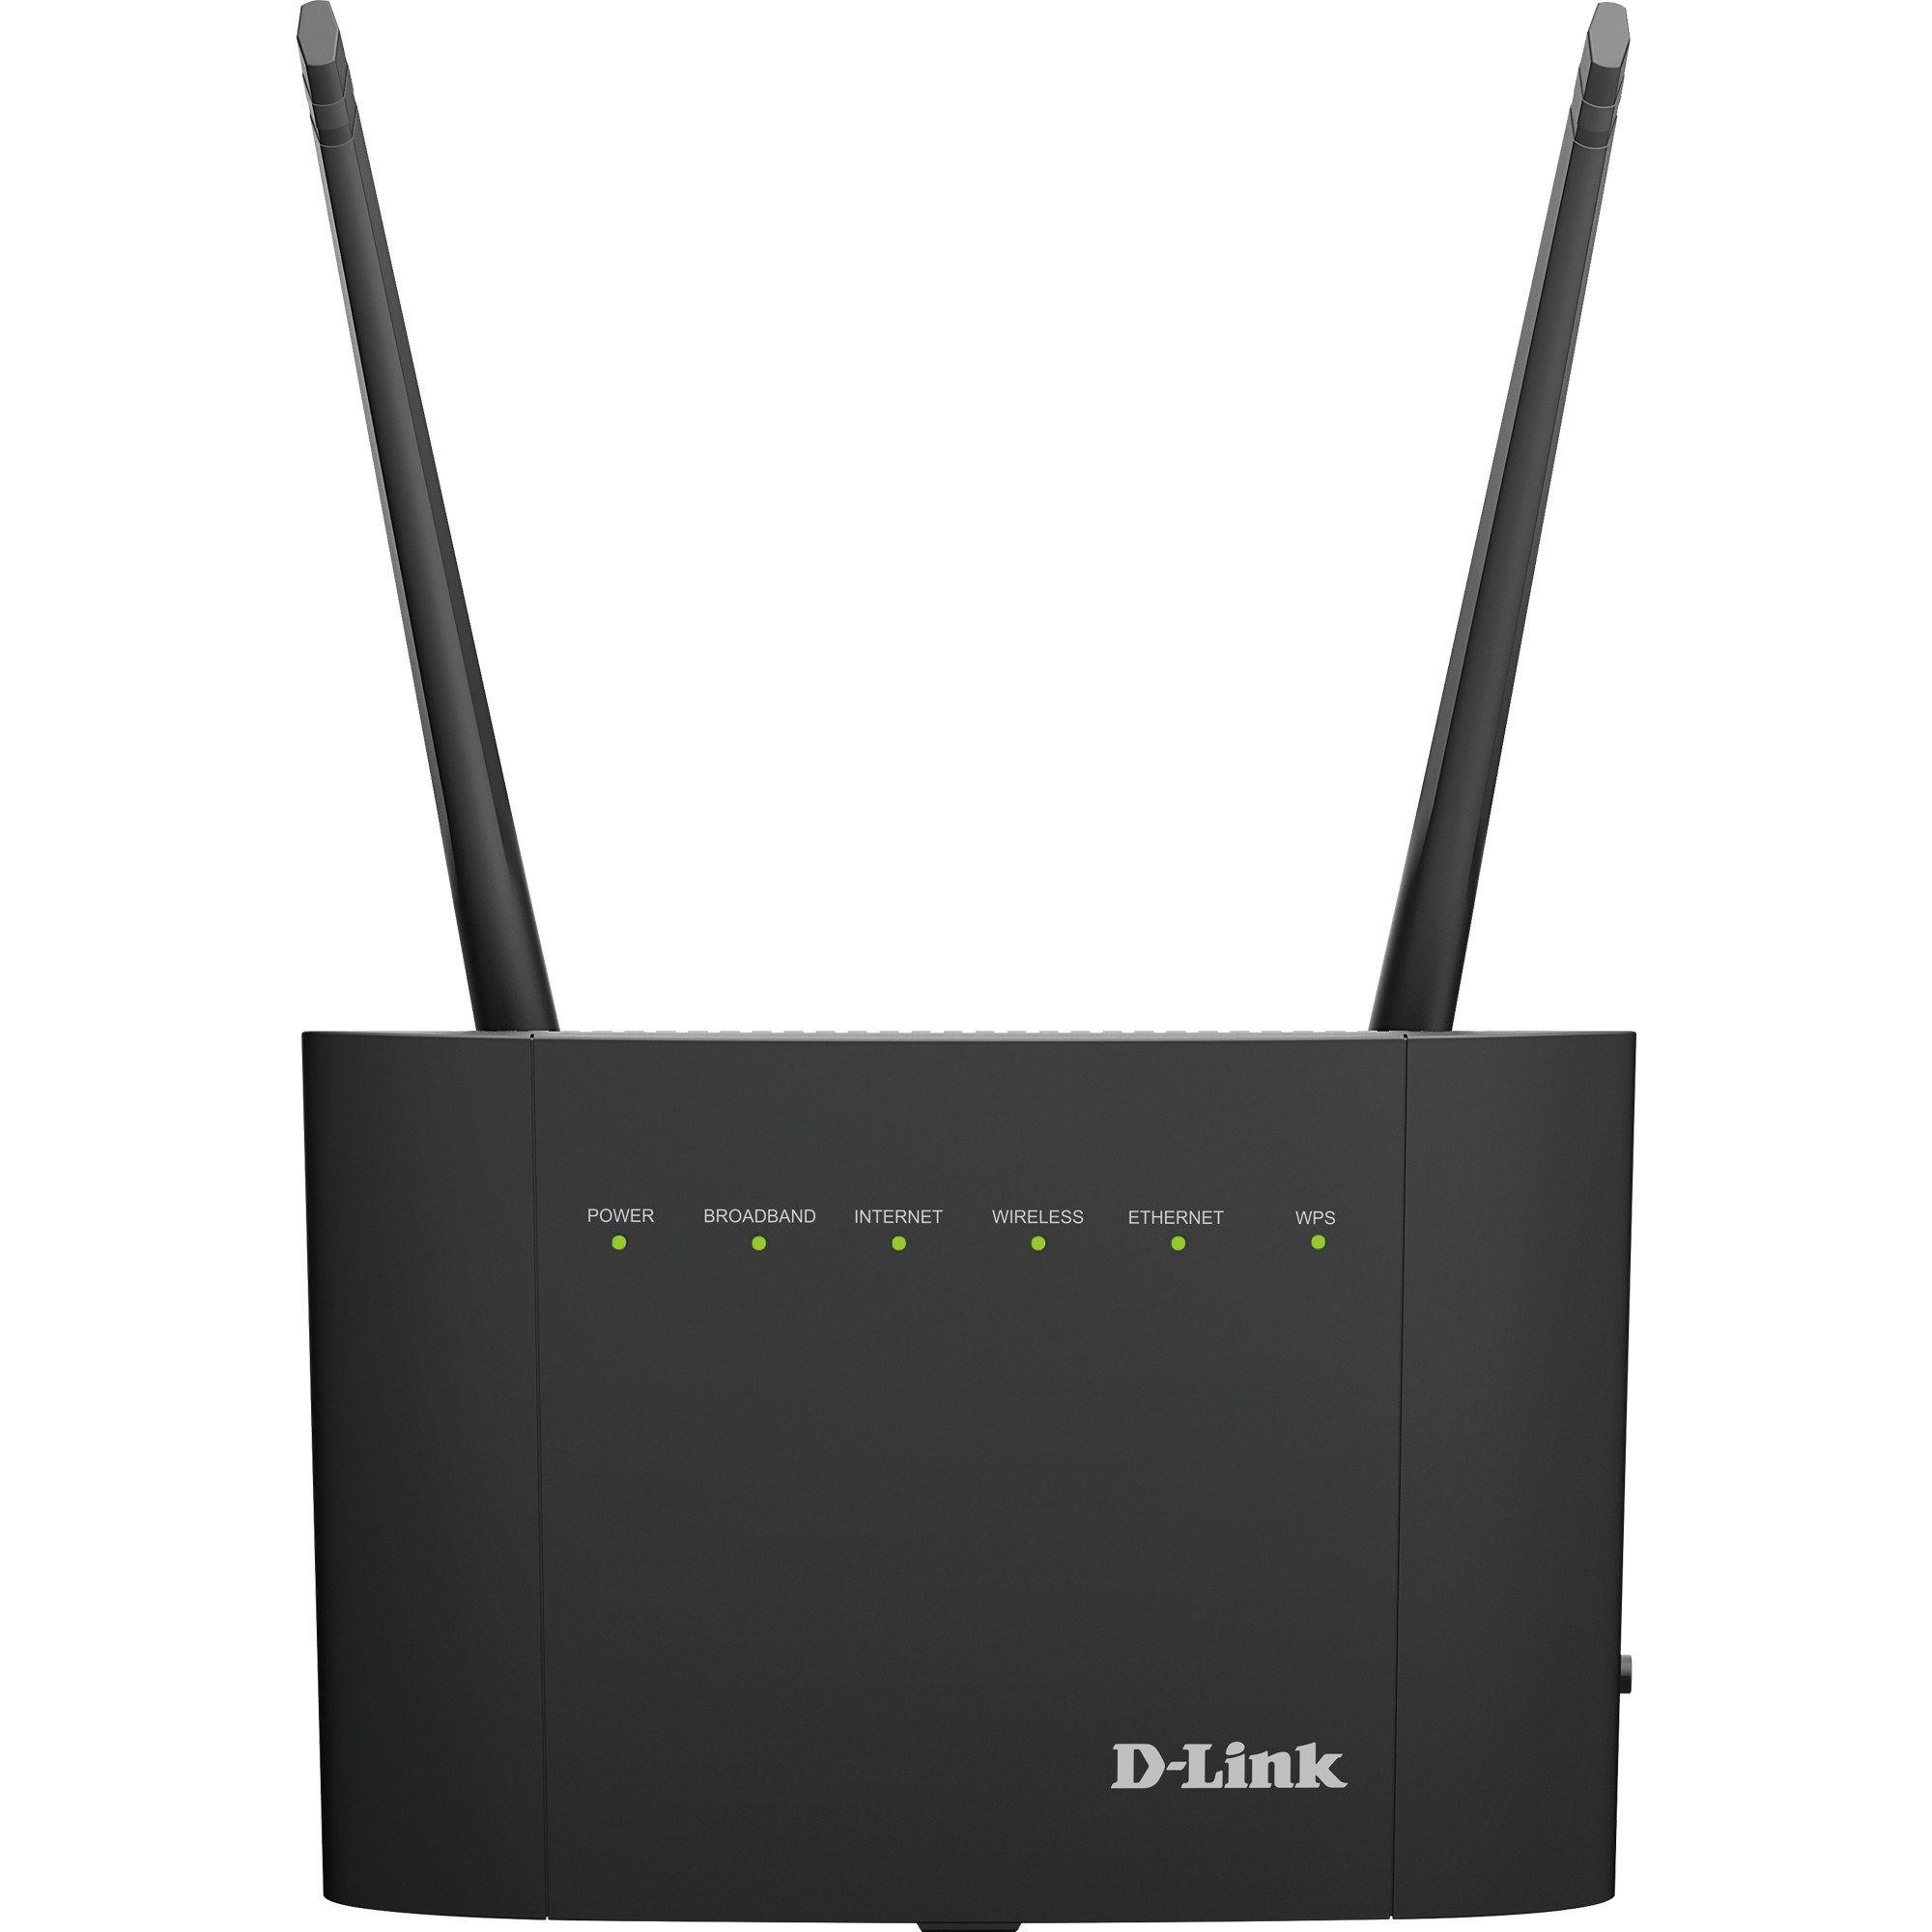 WLAN-Router D-Link D-Link DSL-3788, Router